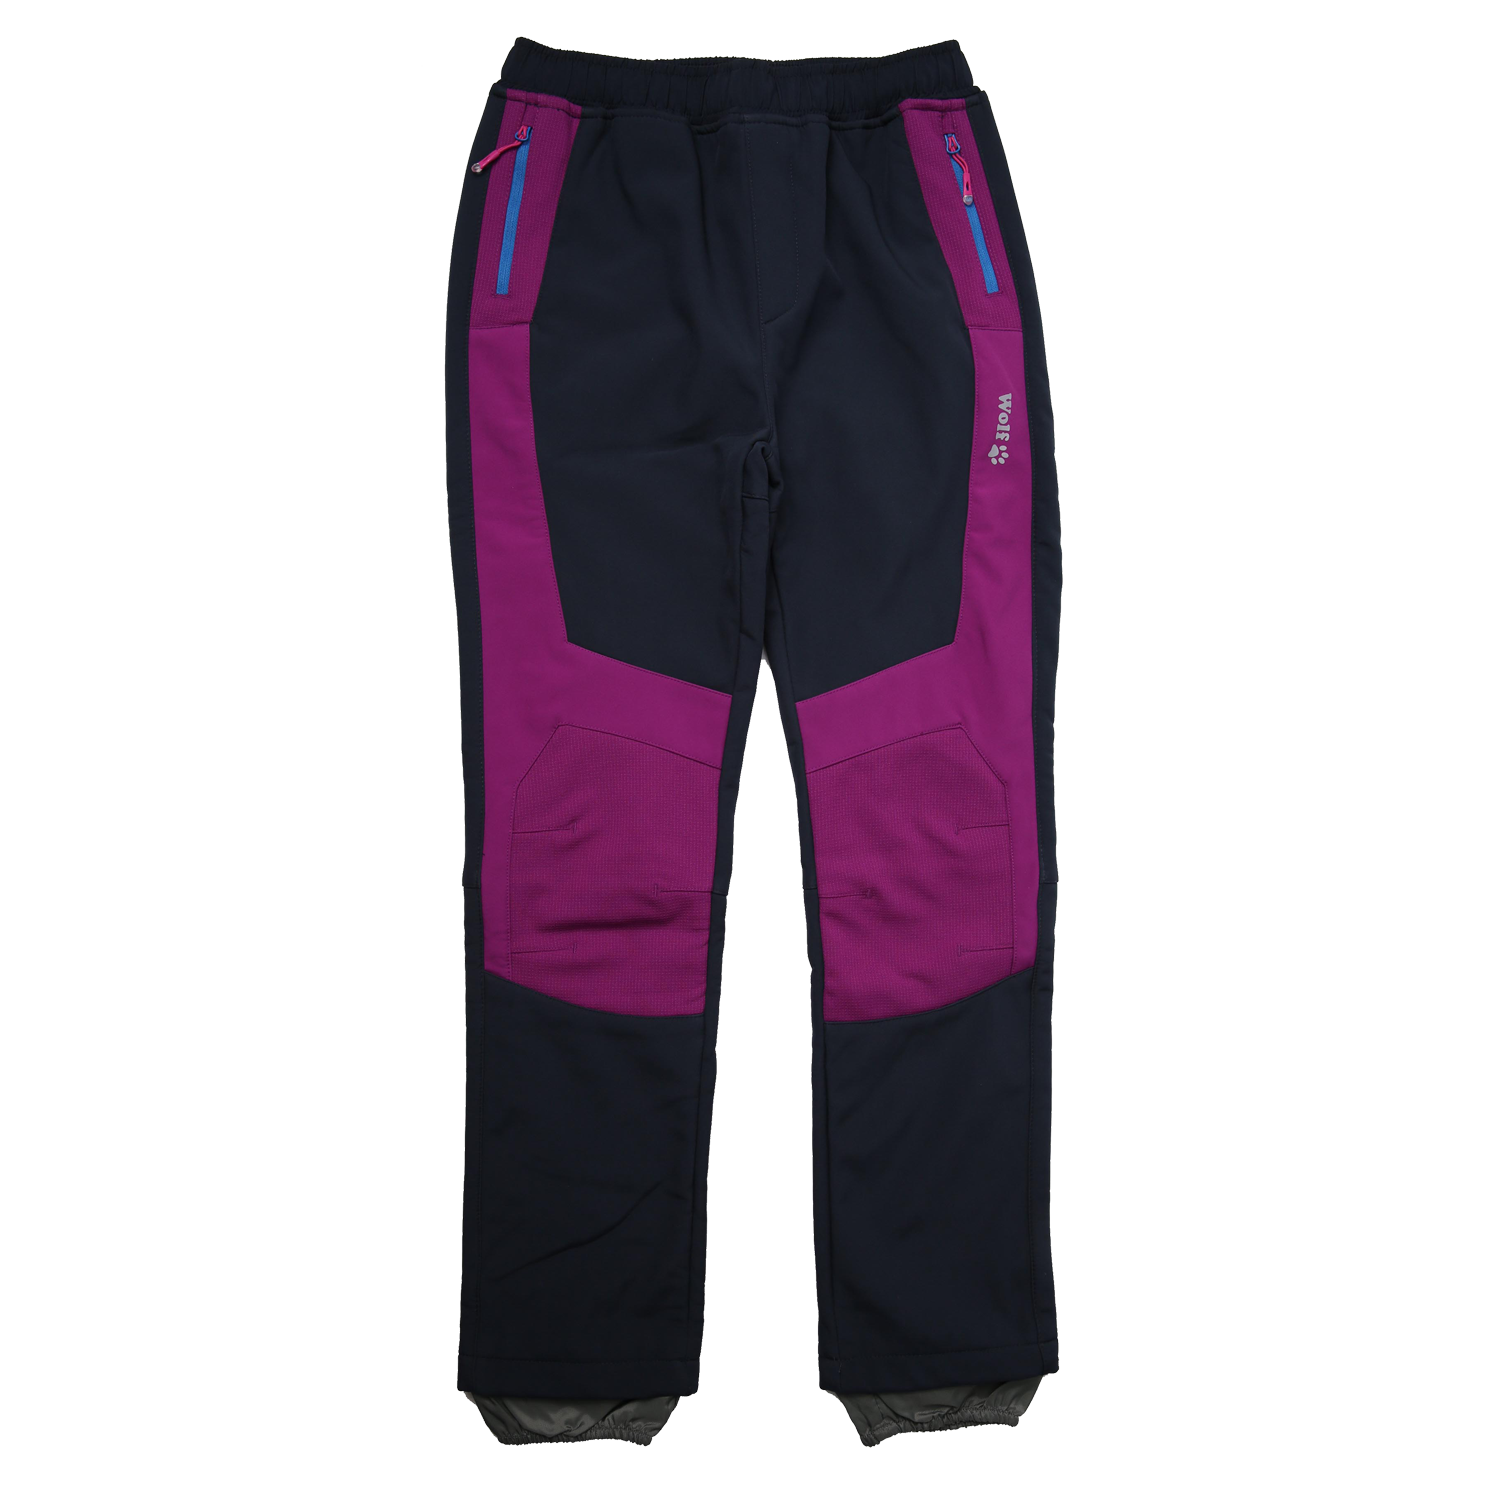 Dívčí softshellové kalhoty, zateplené - Wolf B2295, tmavě modrá/ fialovorůžová Barva: Modrá tmavě, Velikost: 134